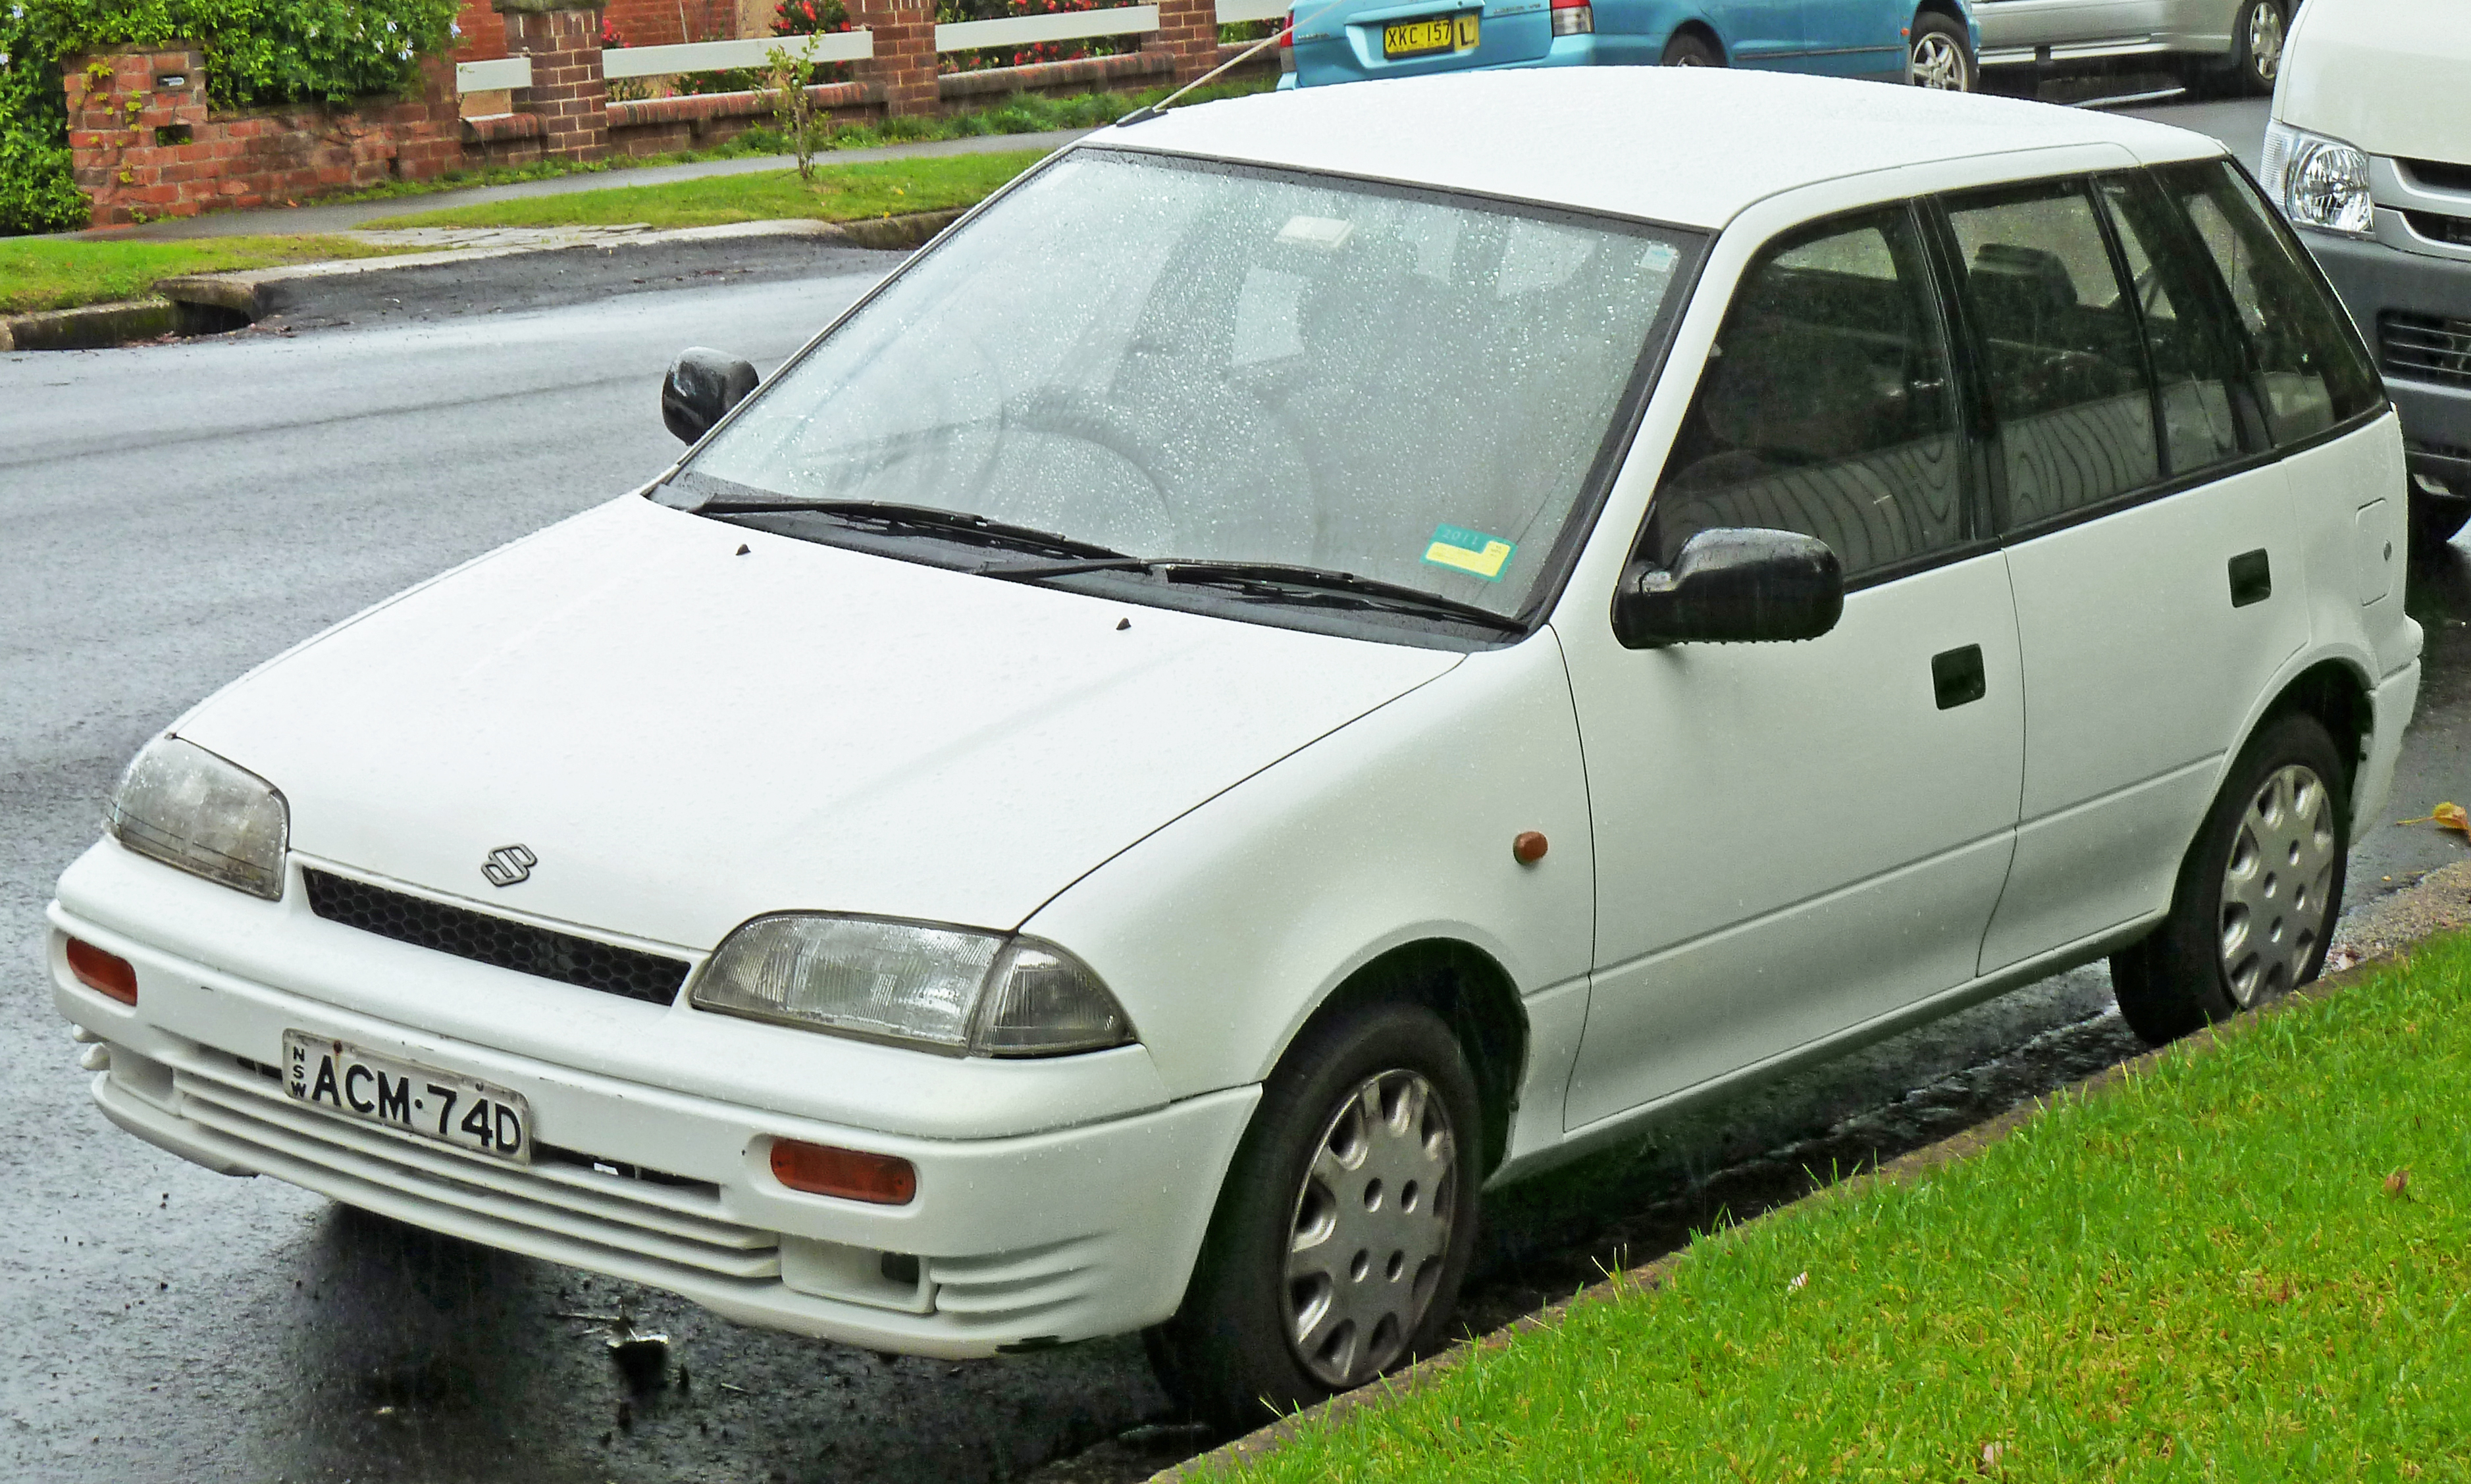 File:1994 Suzuki Swift Cino 5-door hatchback (2011-04-28) 01.jpg